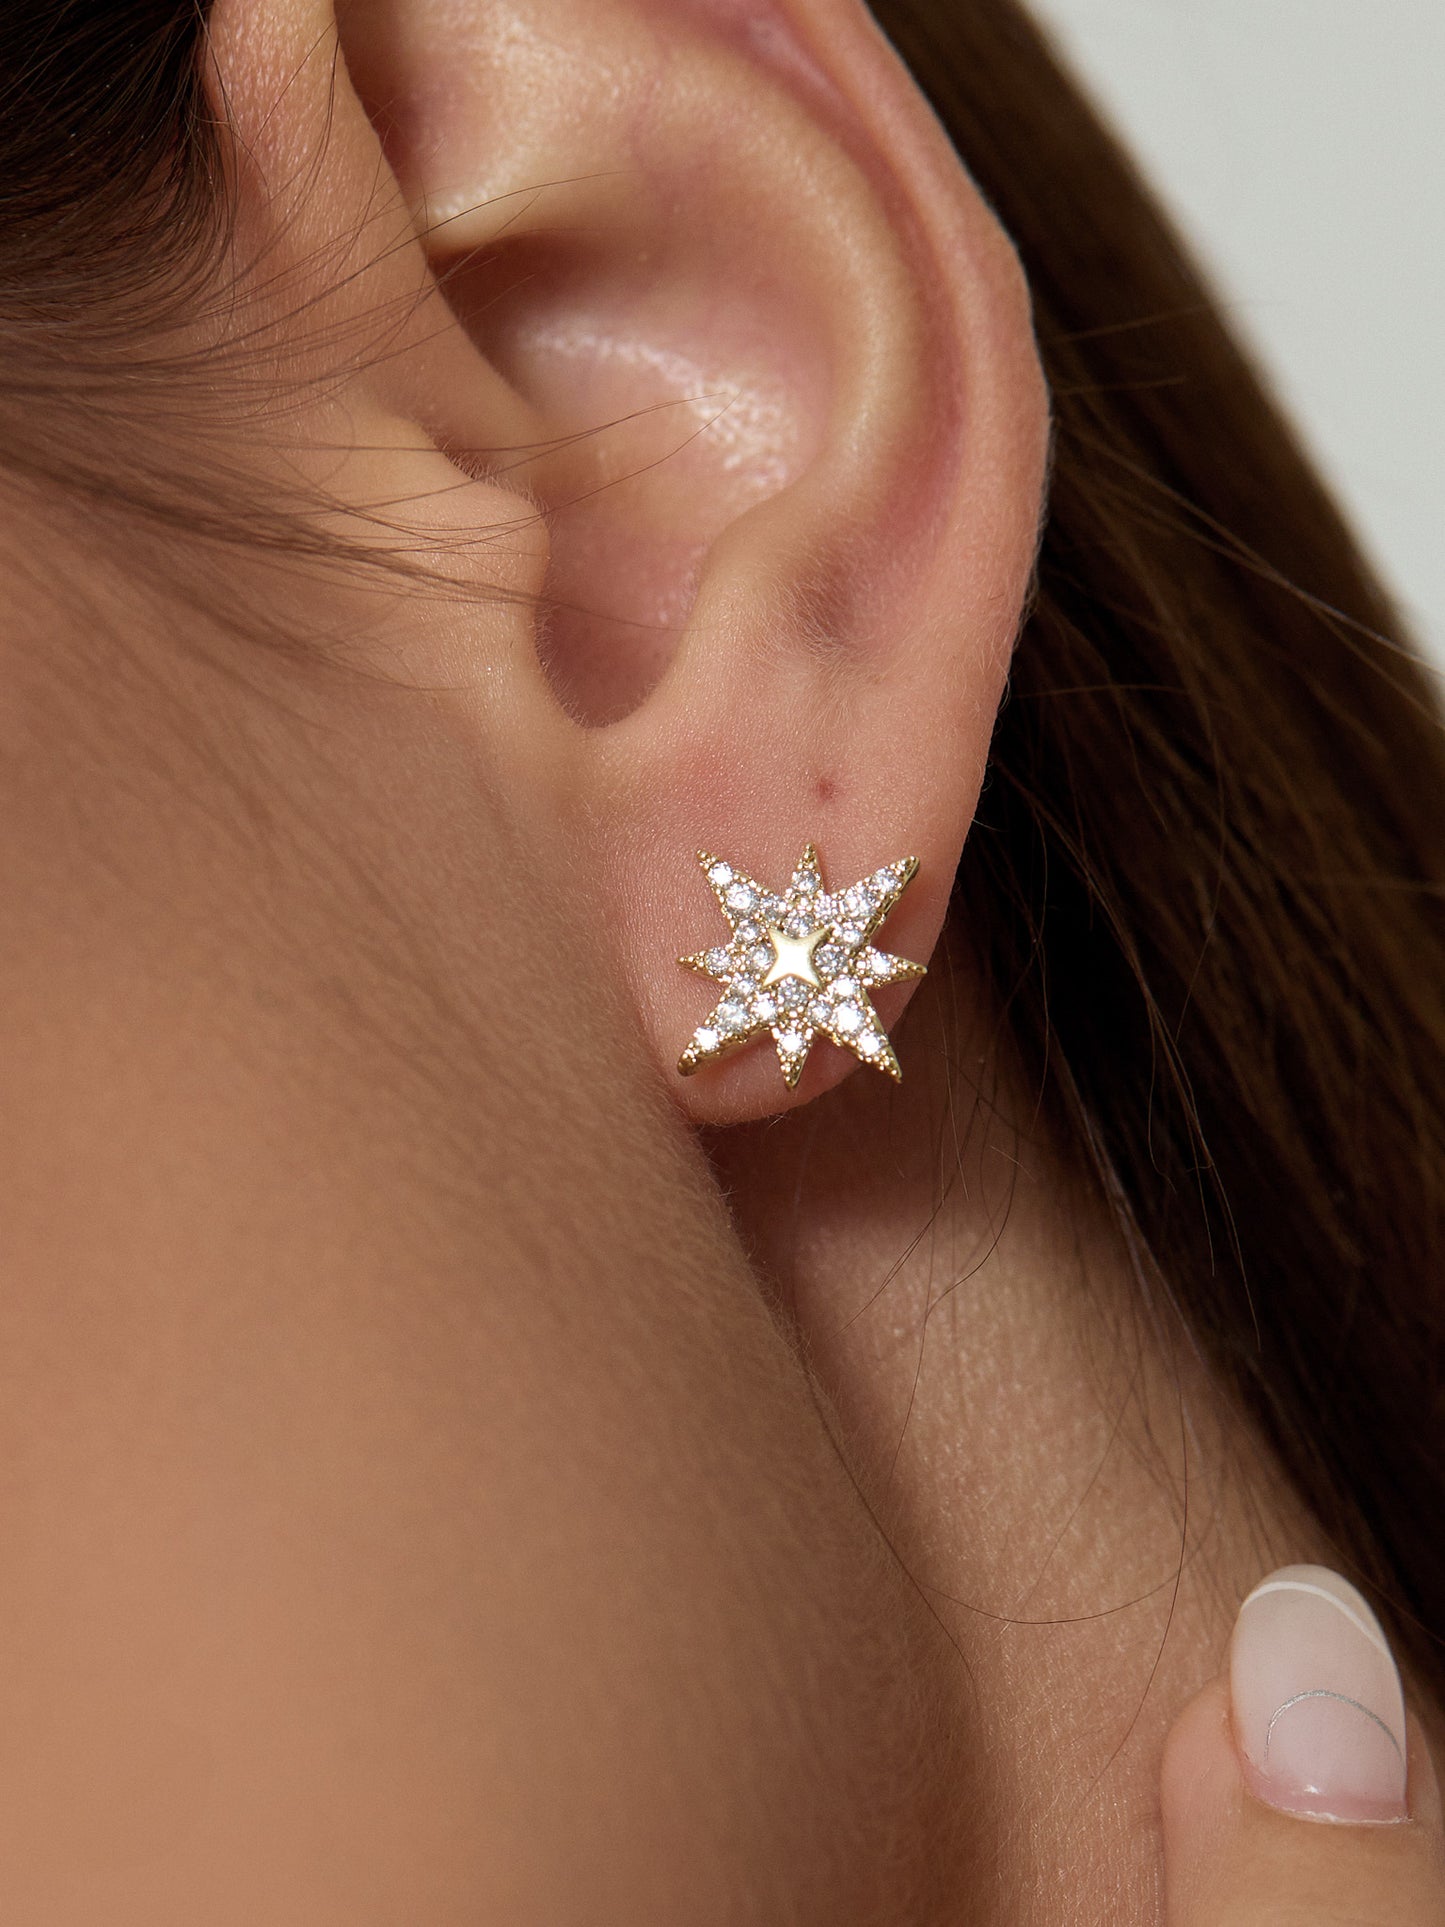 Hexagram Star Stud Earrings